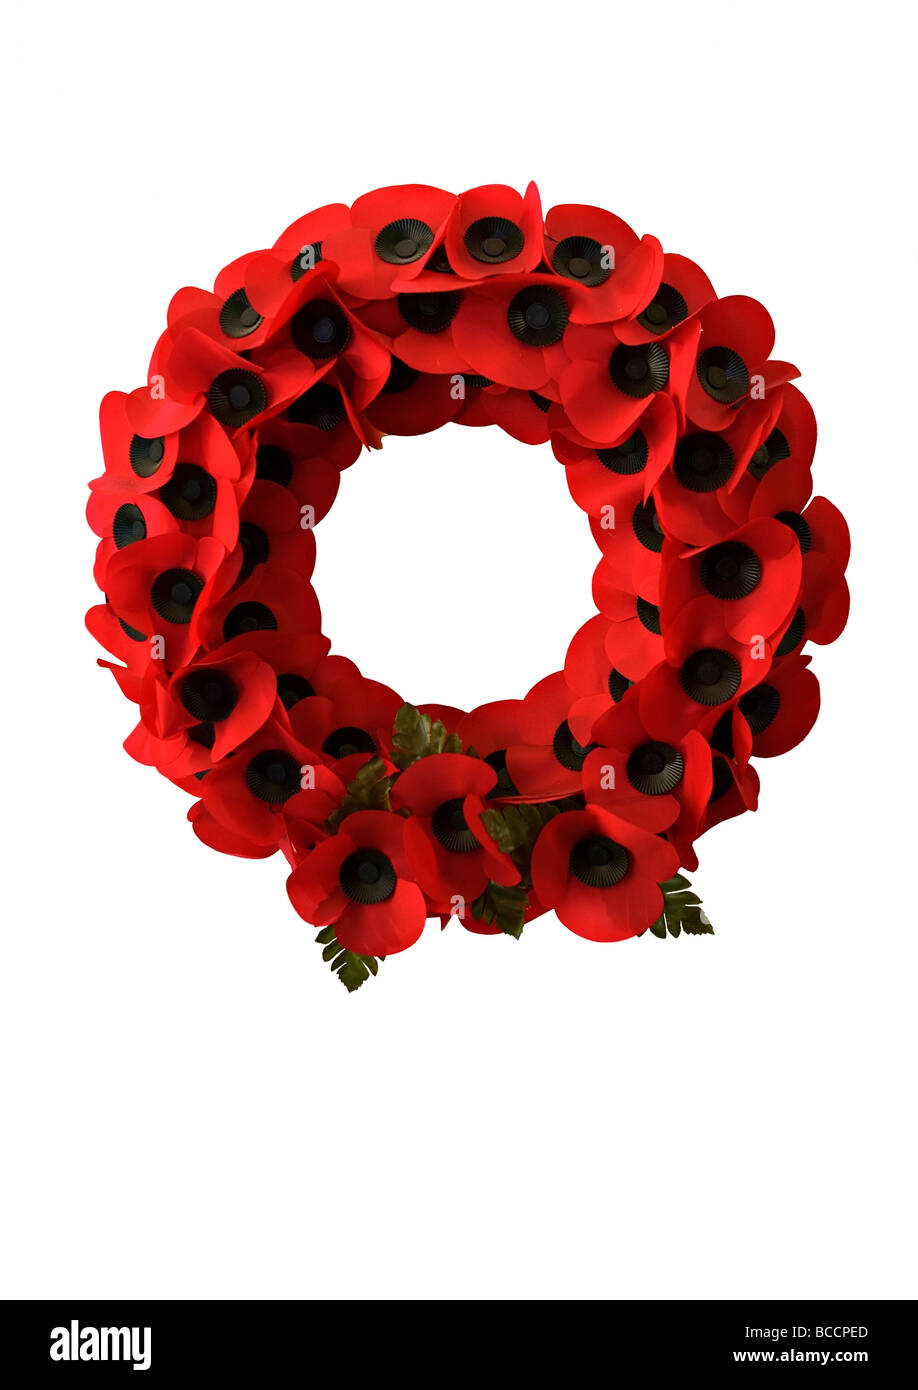 Poppy wreath on plain white background. Stock Photo